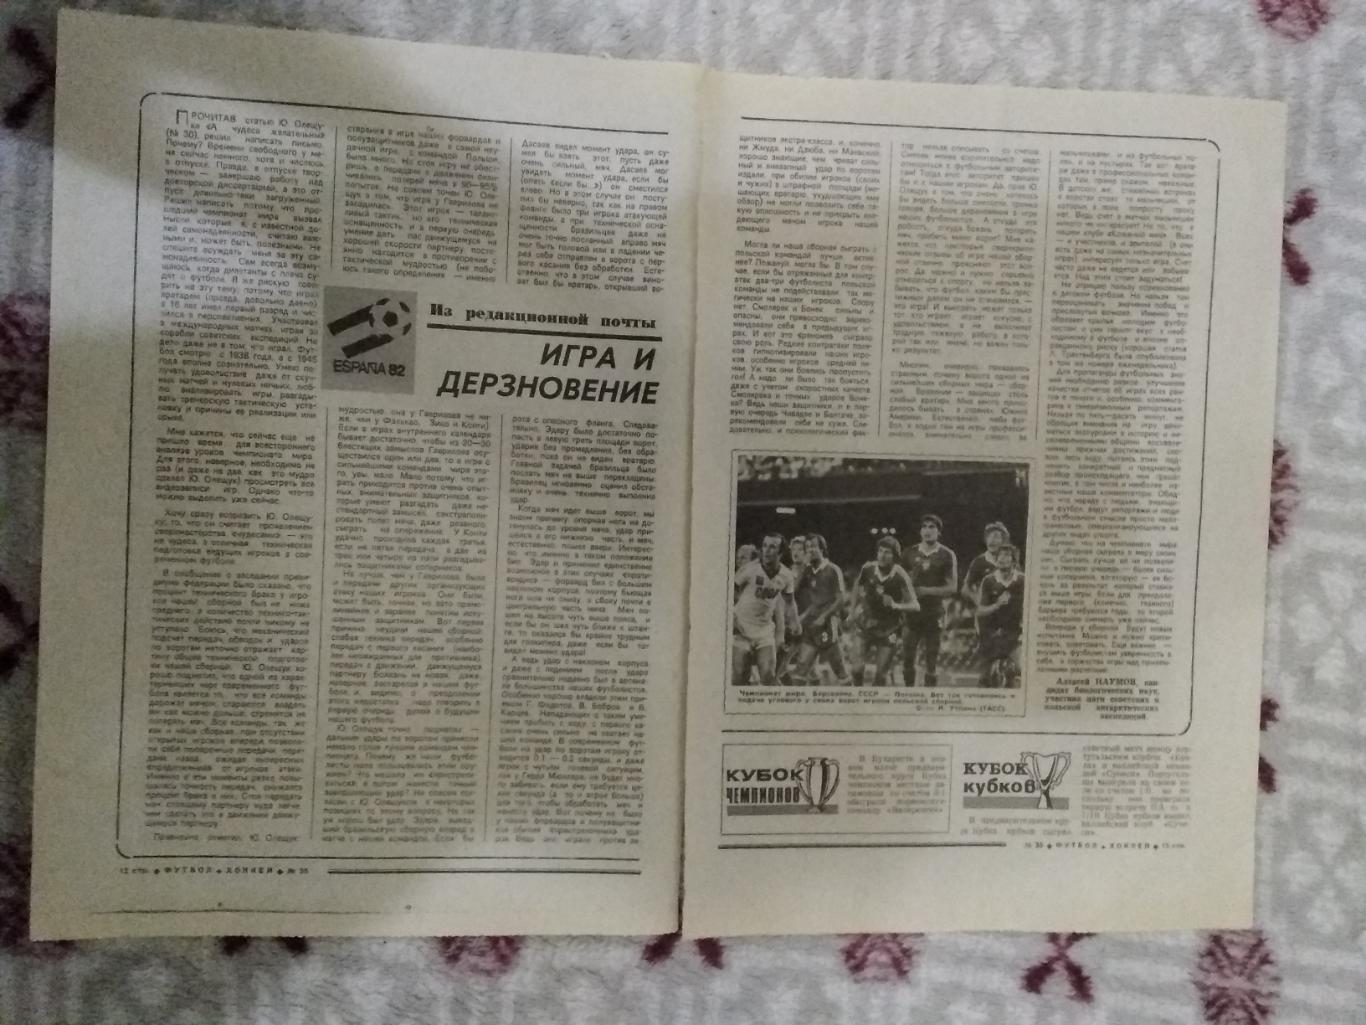 Статья.Футбол.ЧМ Испания 1982. Футбол-Хоккей 1982 г.